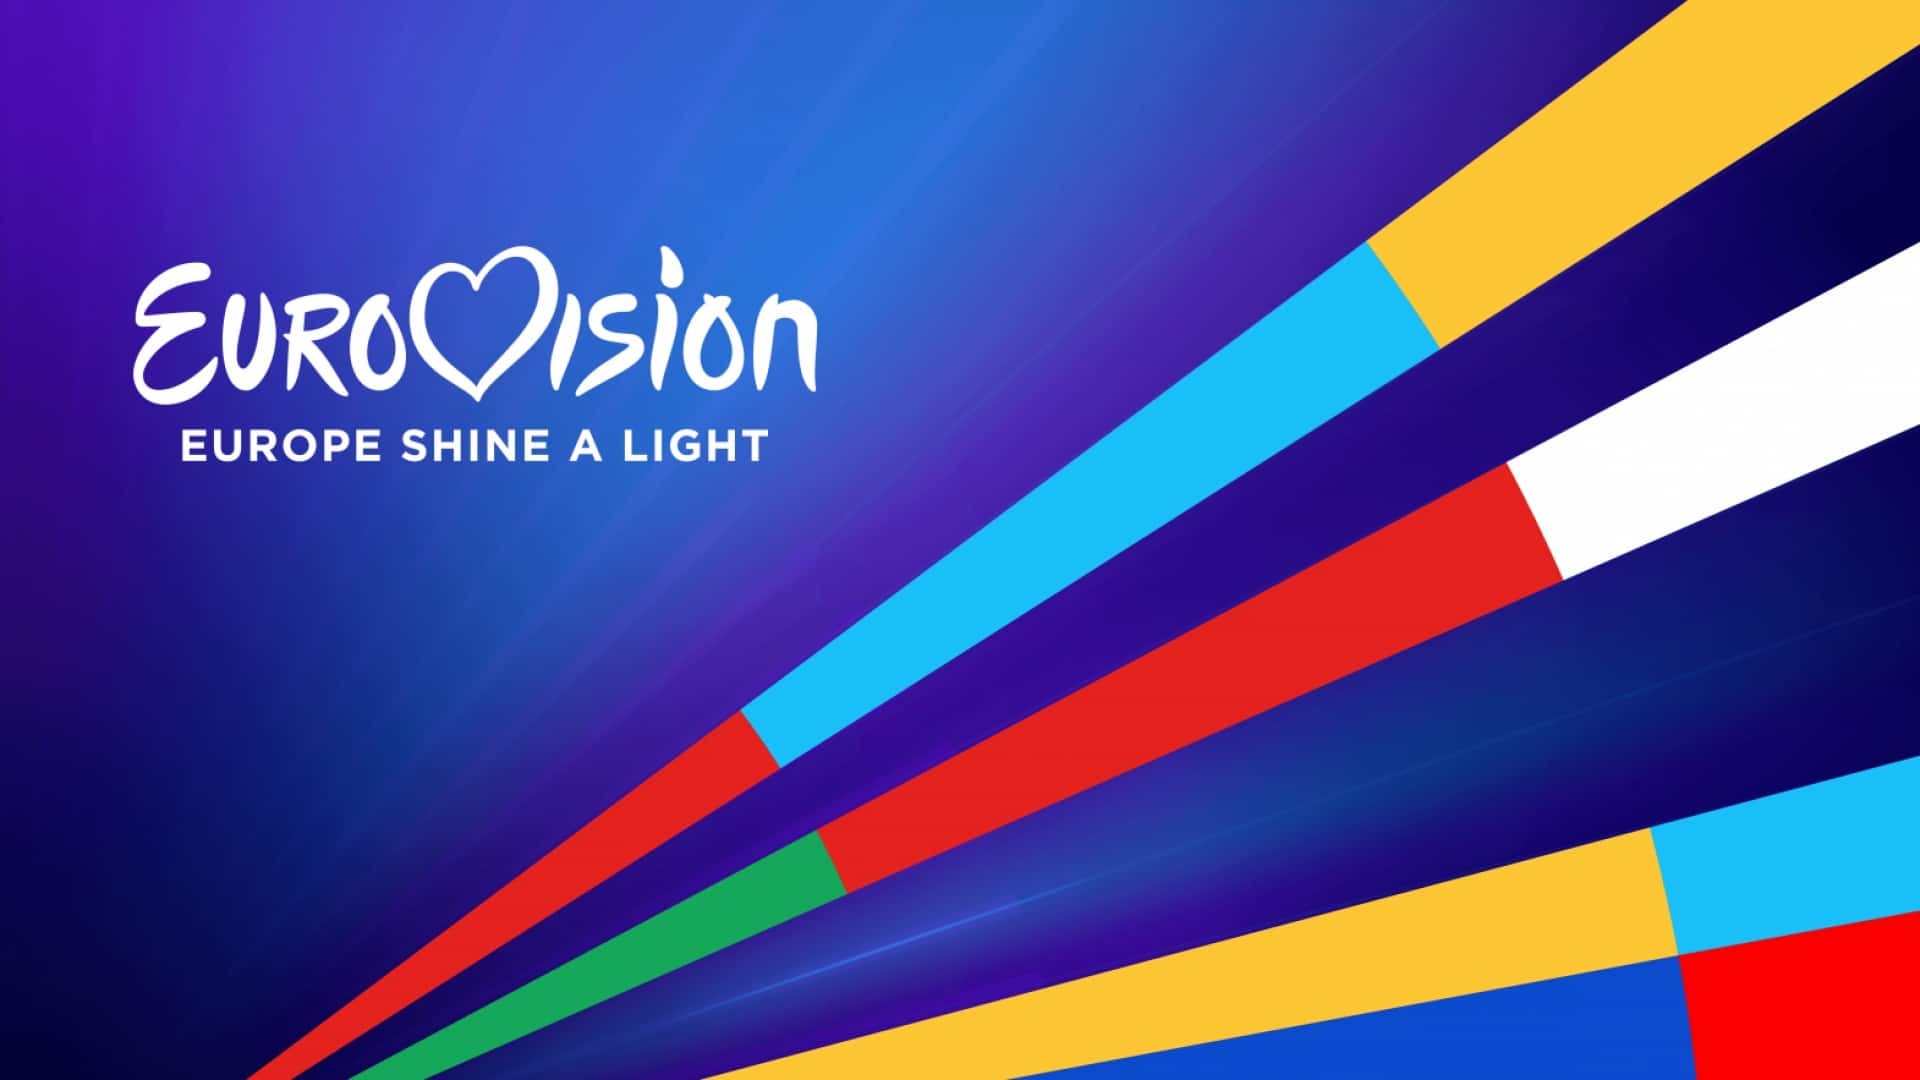 A Eurovision - Europe Shine A Light című helyettesítő showműsor arculata - az EBU, NPO, NOS és AVROTROS grafikája